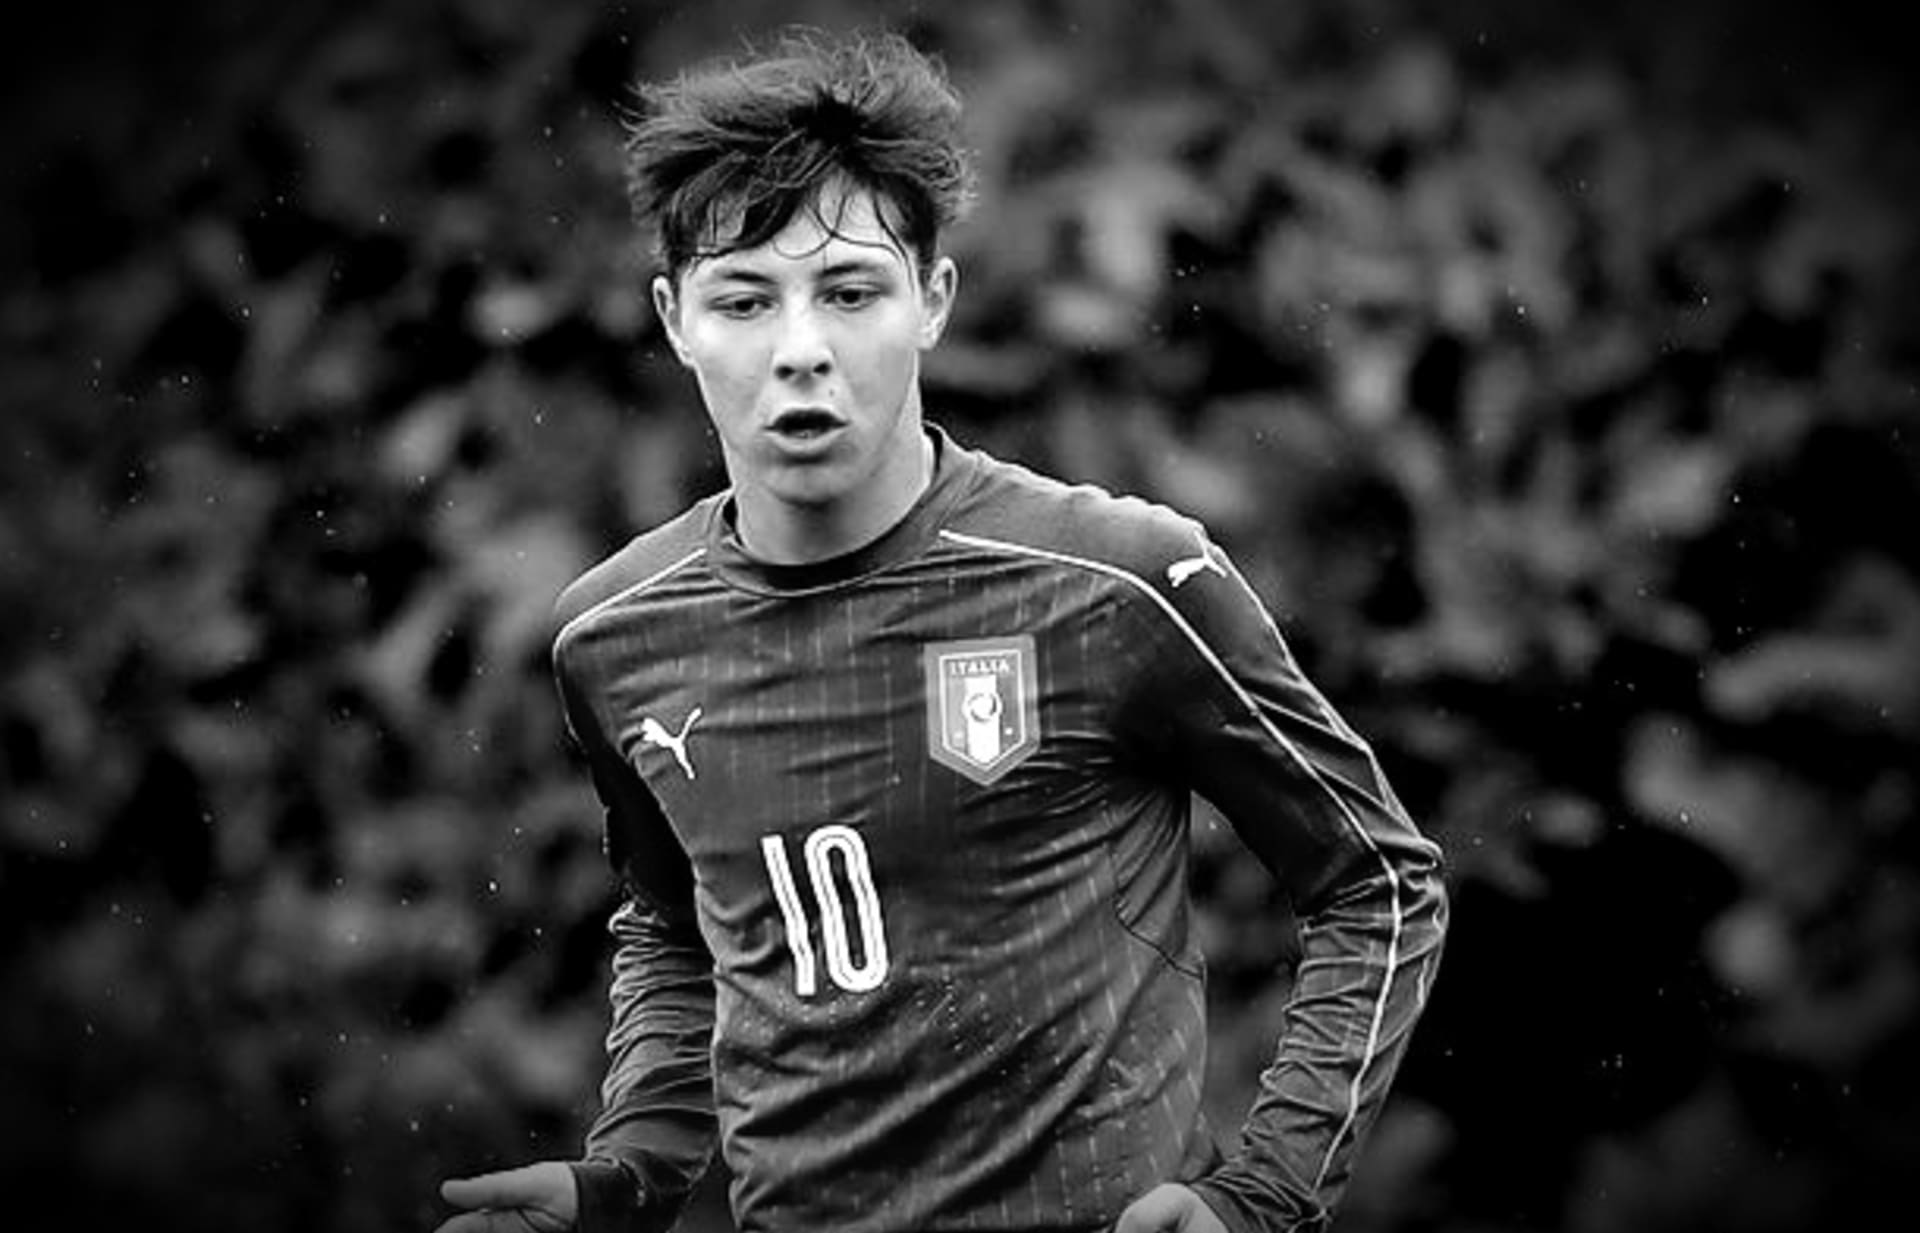 Čerstvě 19letý fotbalista Daniel Guerini zemřel při středeční automobilové nehodě v Římě.